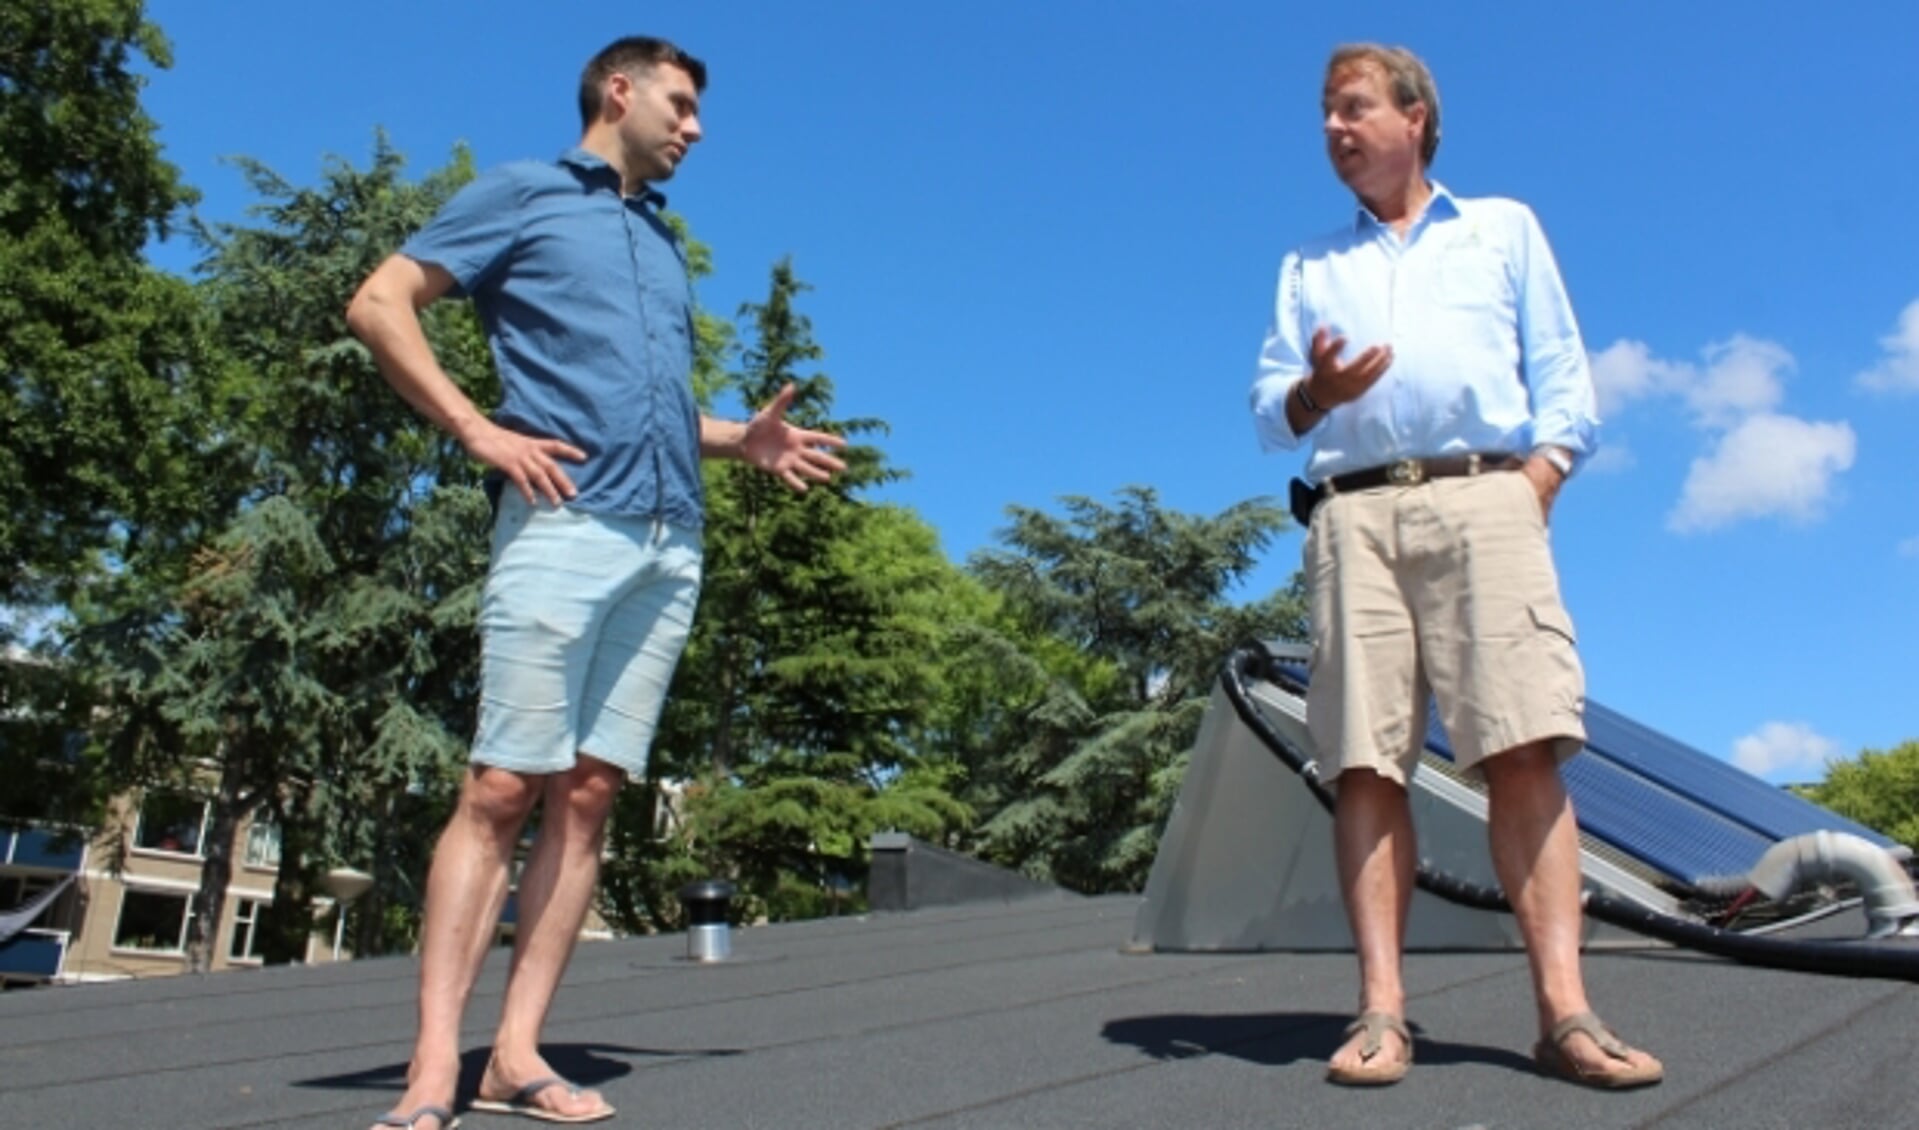 Energiecoaches Robert Vaane (38) en Frank van Oudenhove (63) praten over duurzaamheidstoepassingen, op het dak.